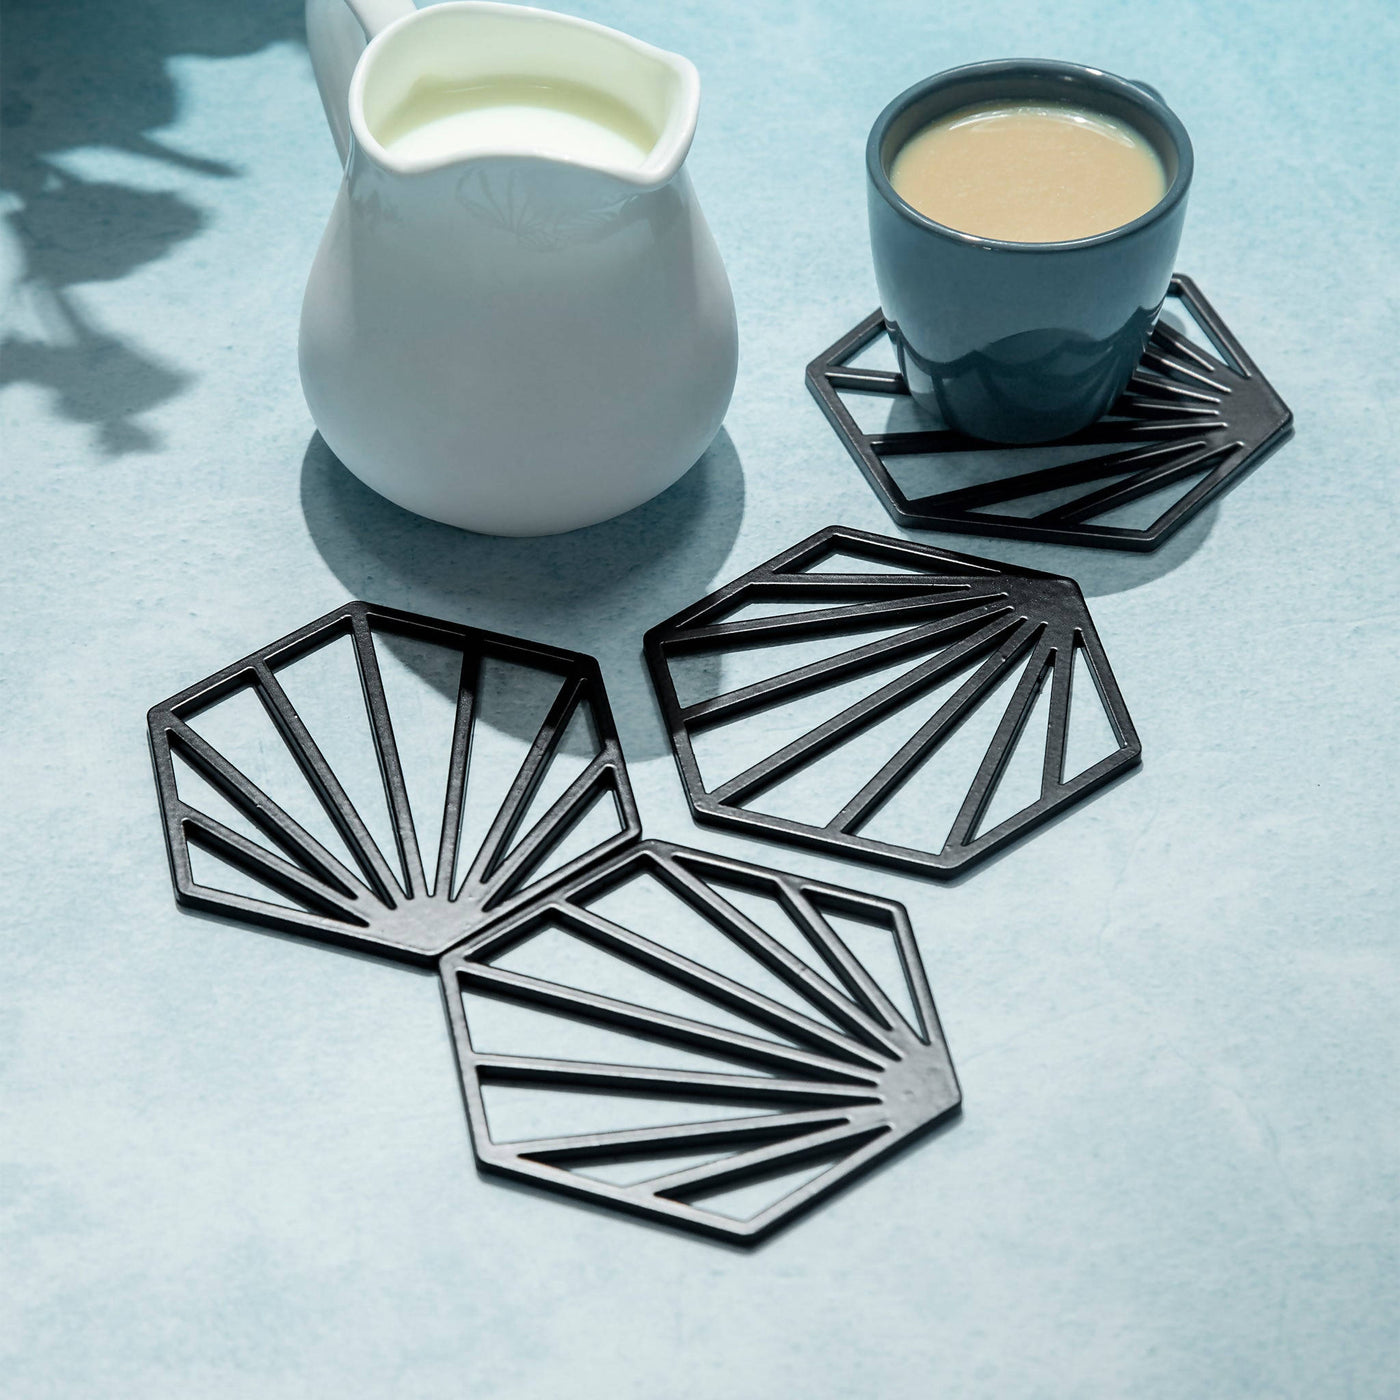 Kado Hexagonal Coaster Set